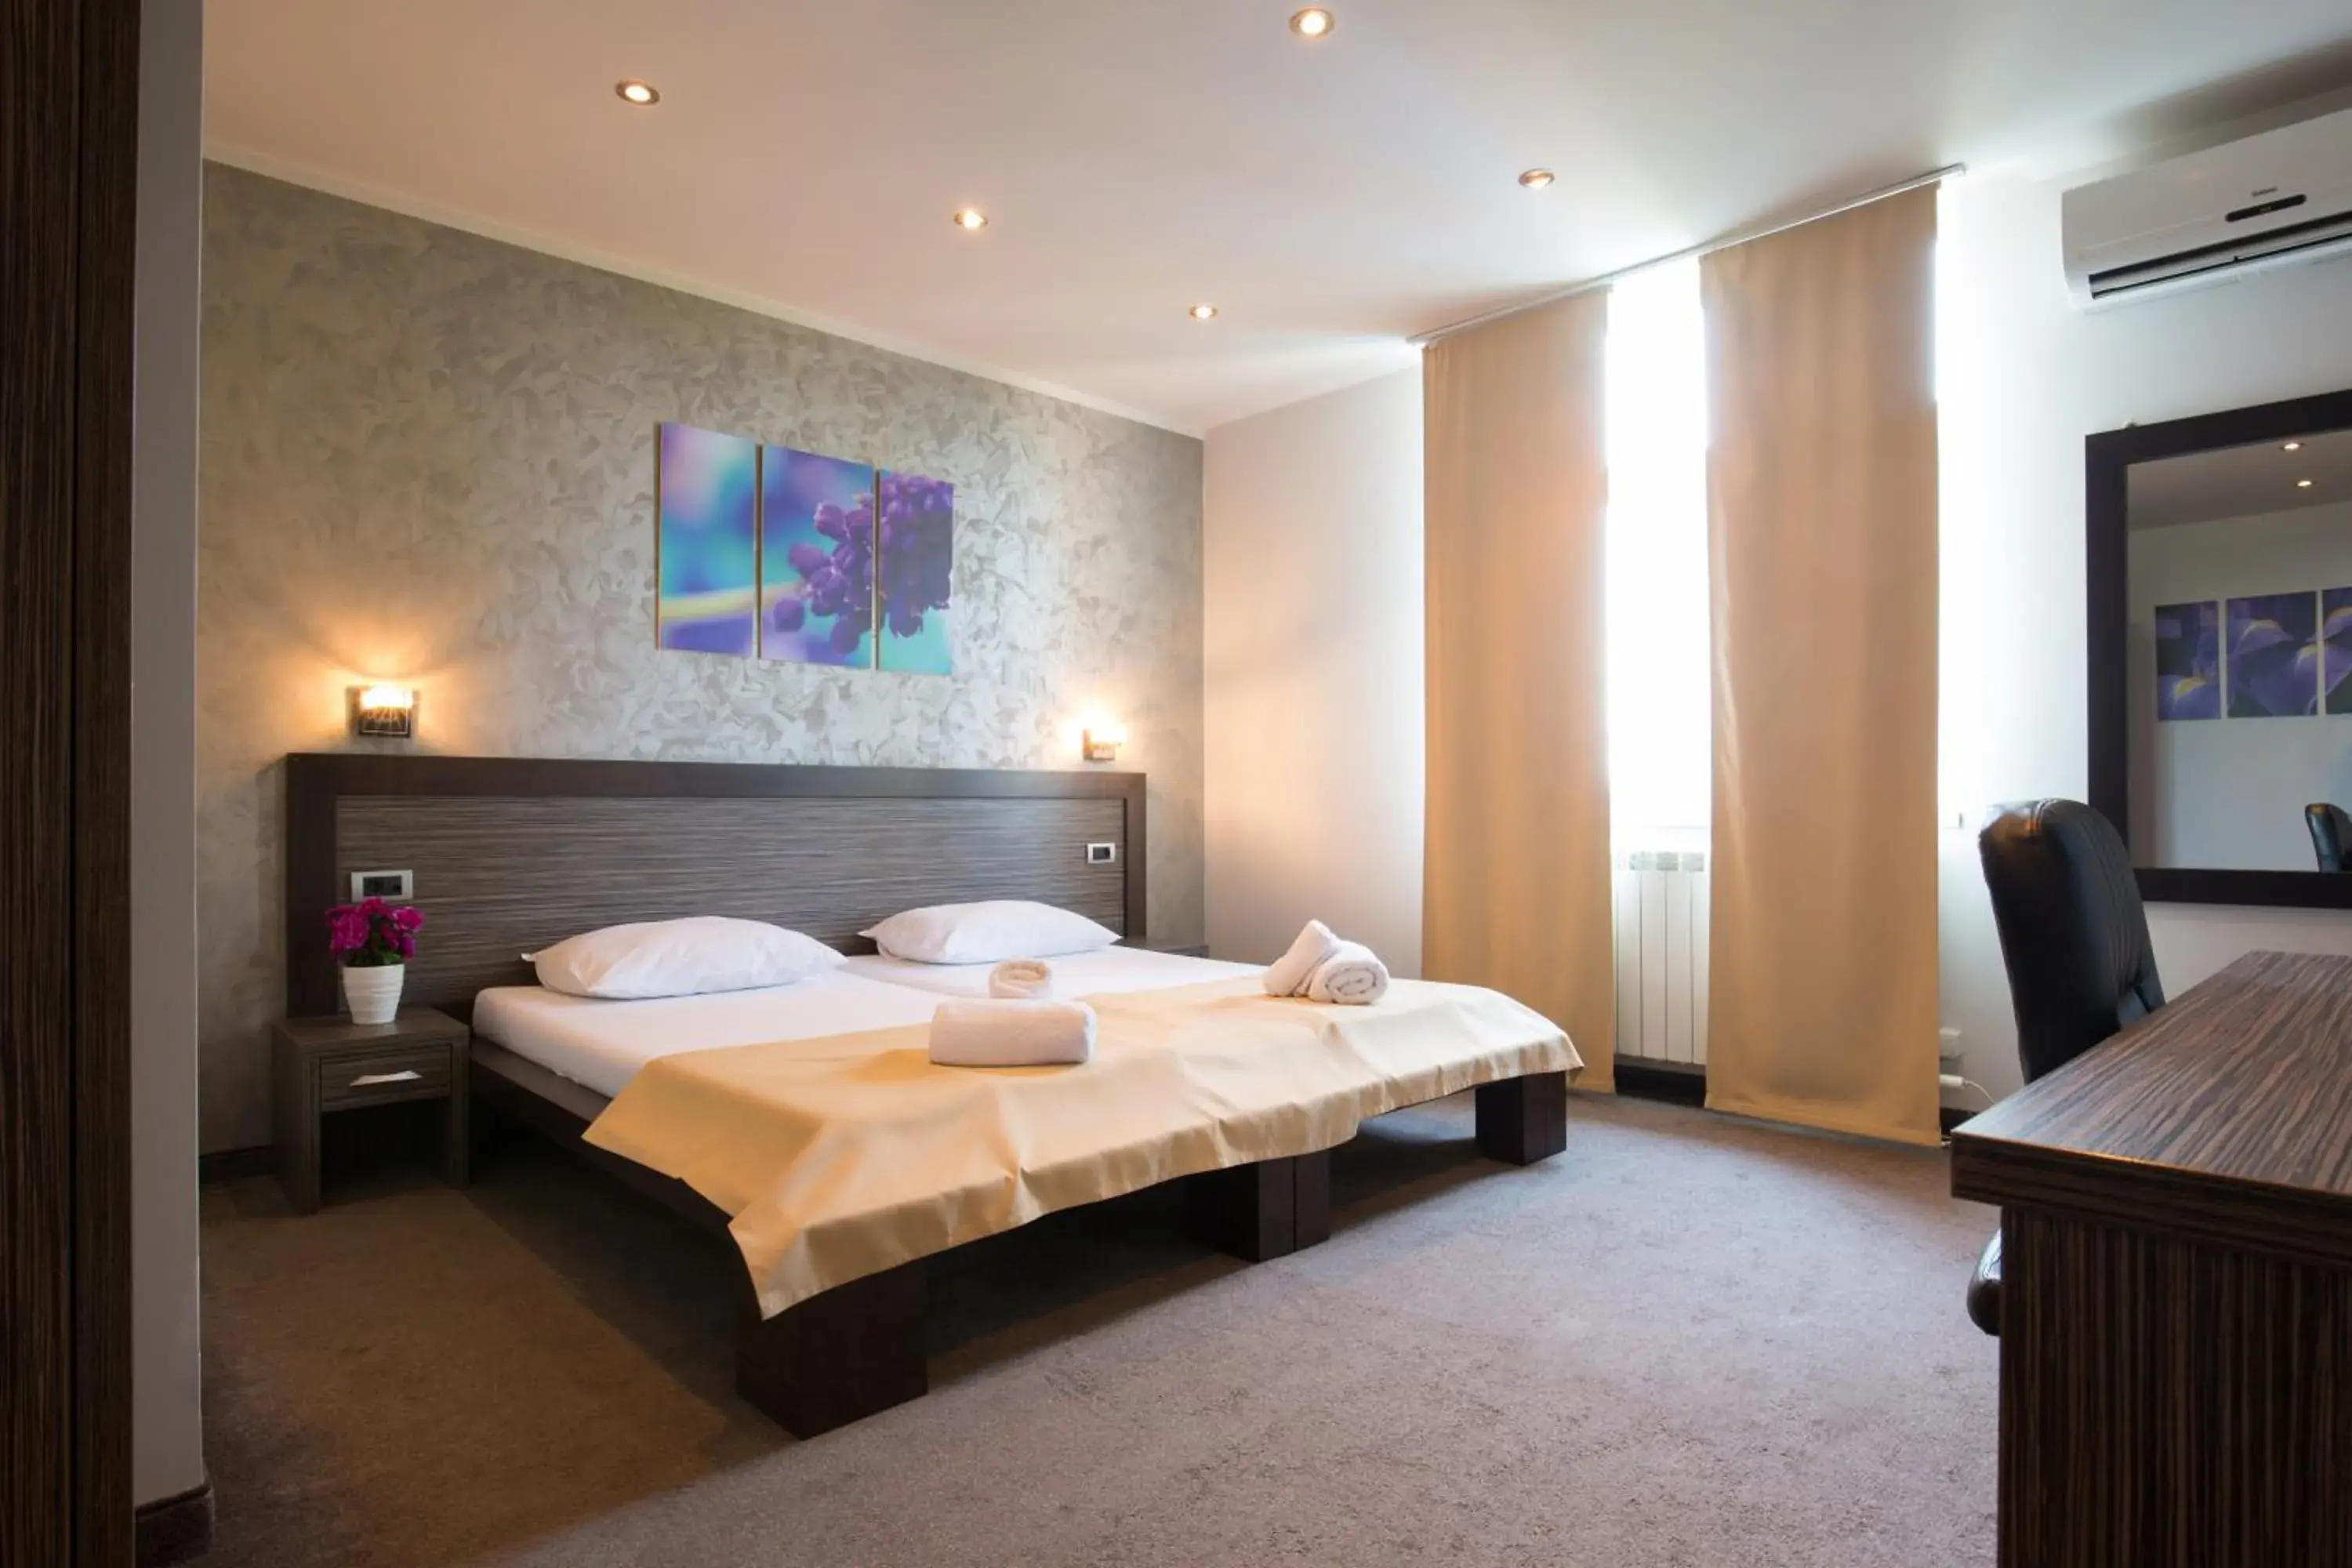 Bed, Room Photo in Villa Mystique